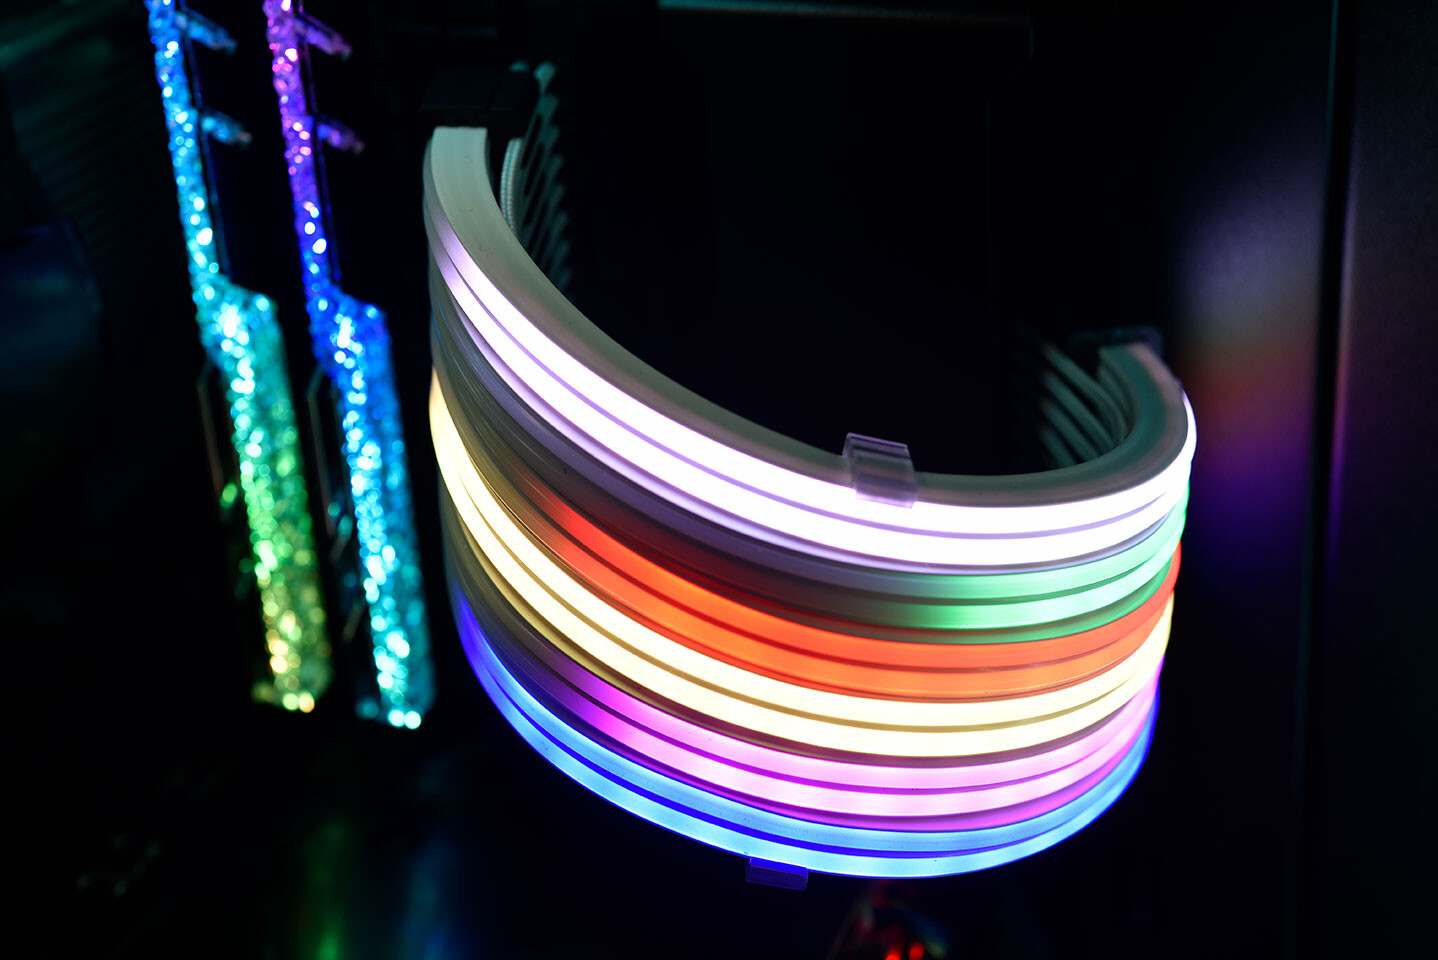 Lian Li STRIMER PLUS هو الجيل التالي لكابلات مزودات الطاقة بإضاءة RGB